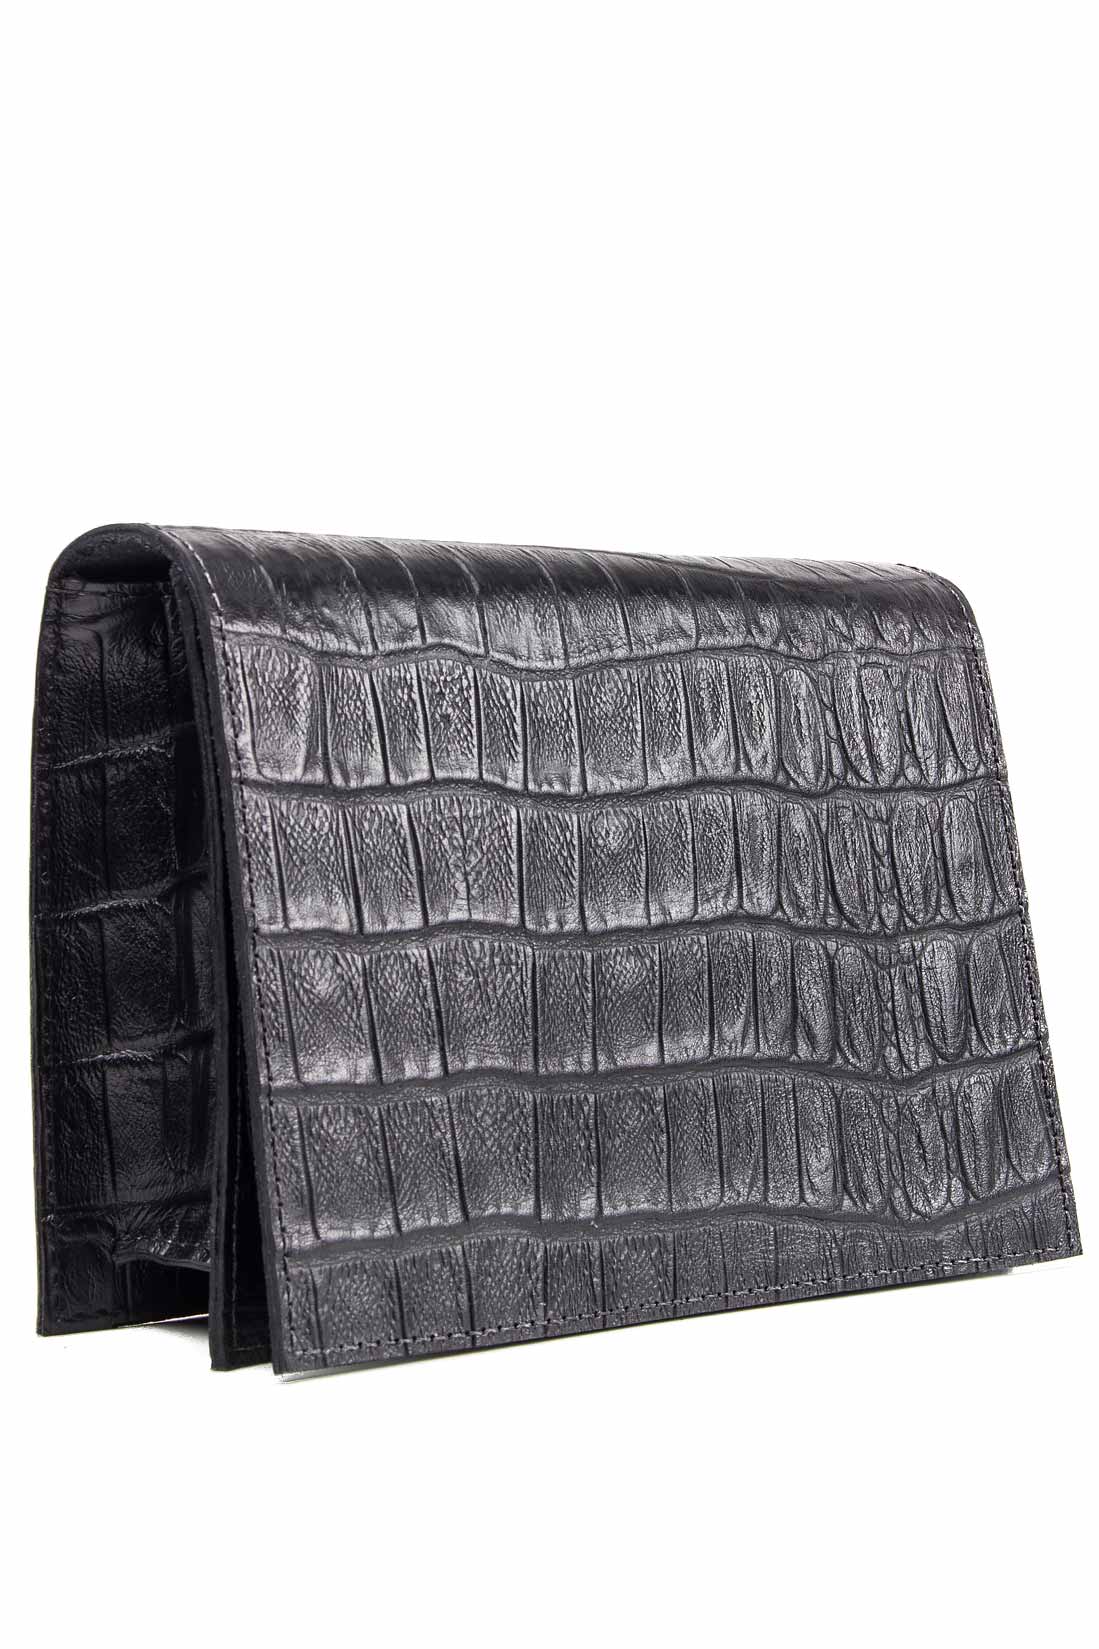 Croc-effect leather shoulder bag Laura Olaru image 1